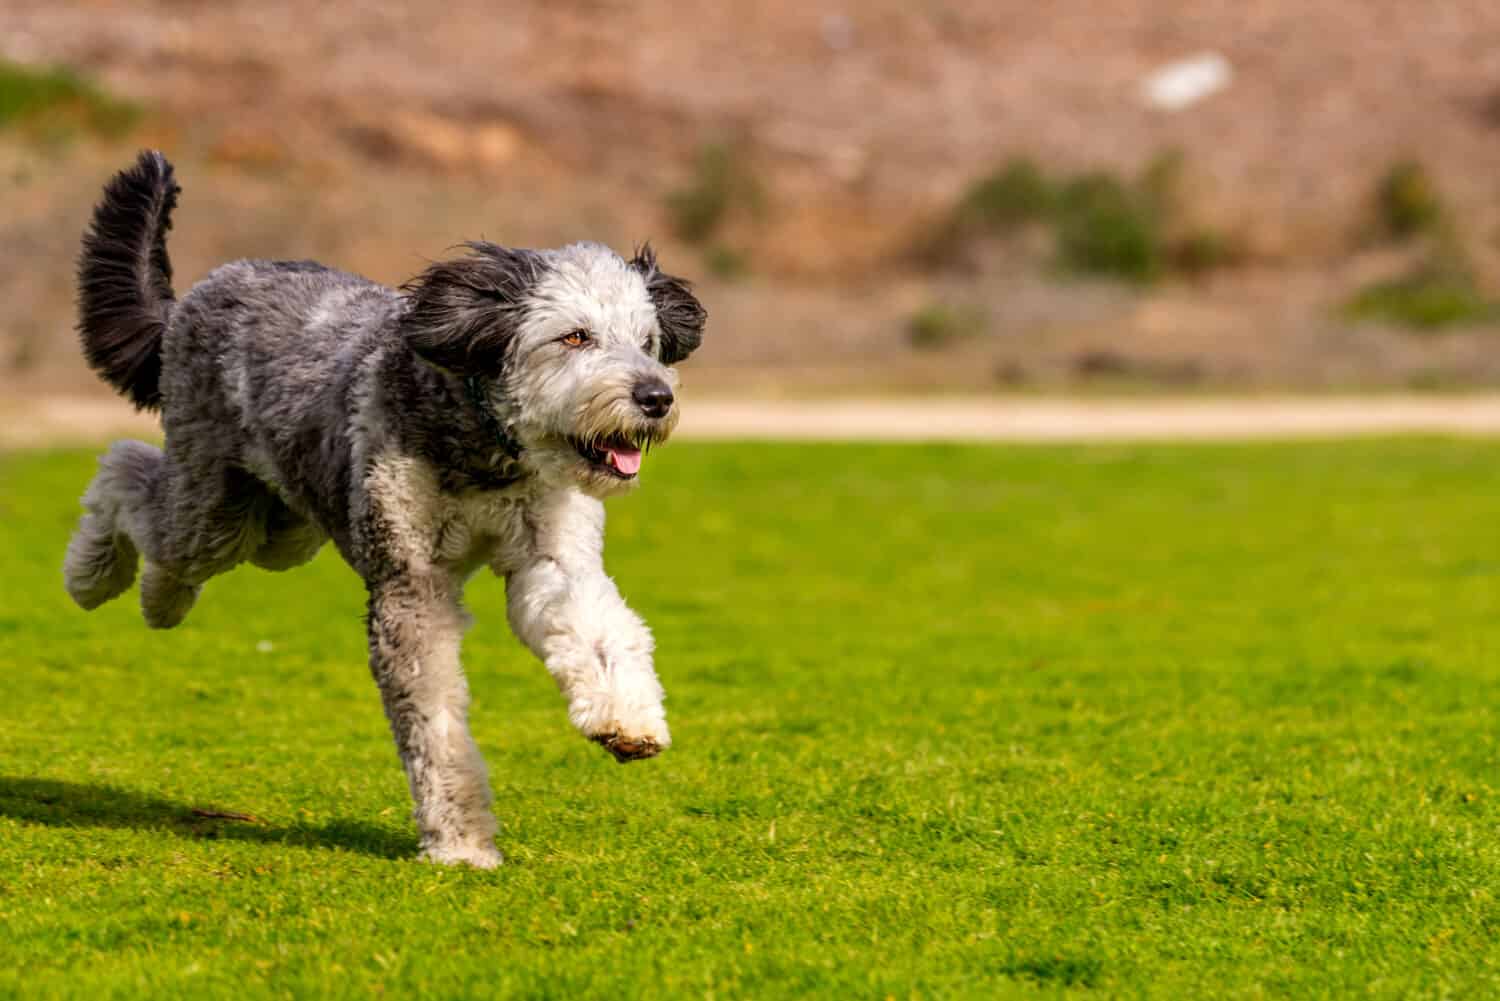 Aussiedoodle gioca e corre nel parco.  Aussiedoodle è un cane di design mix tra barboncino di razza e pastore australiano.  Sono cani da compagnia.